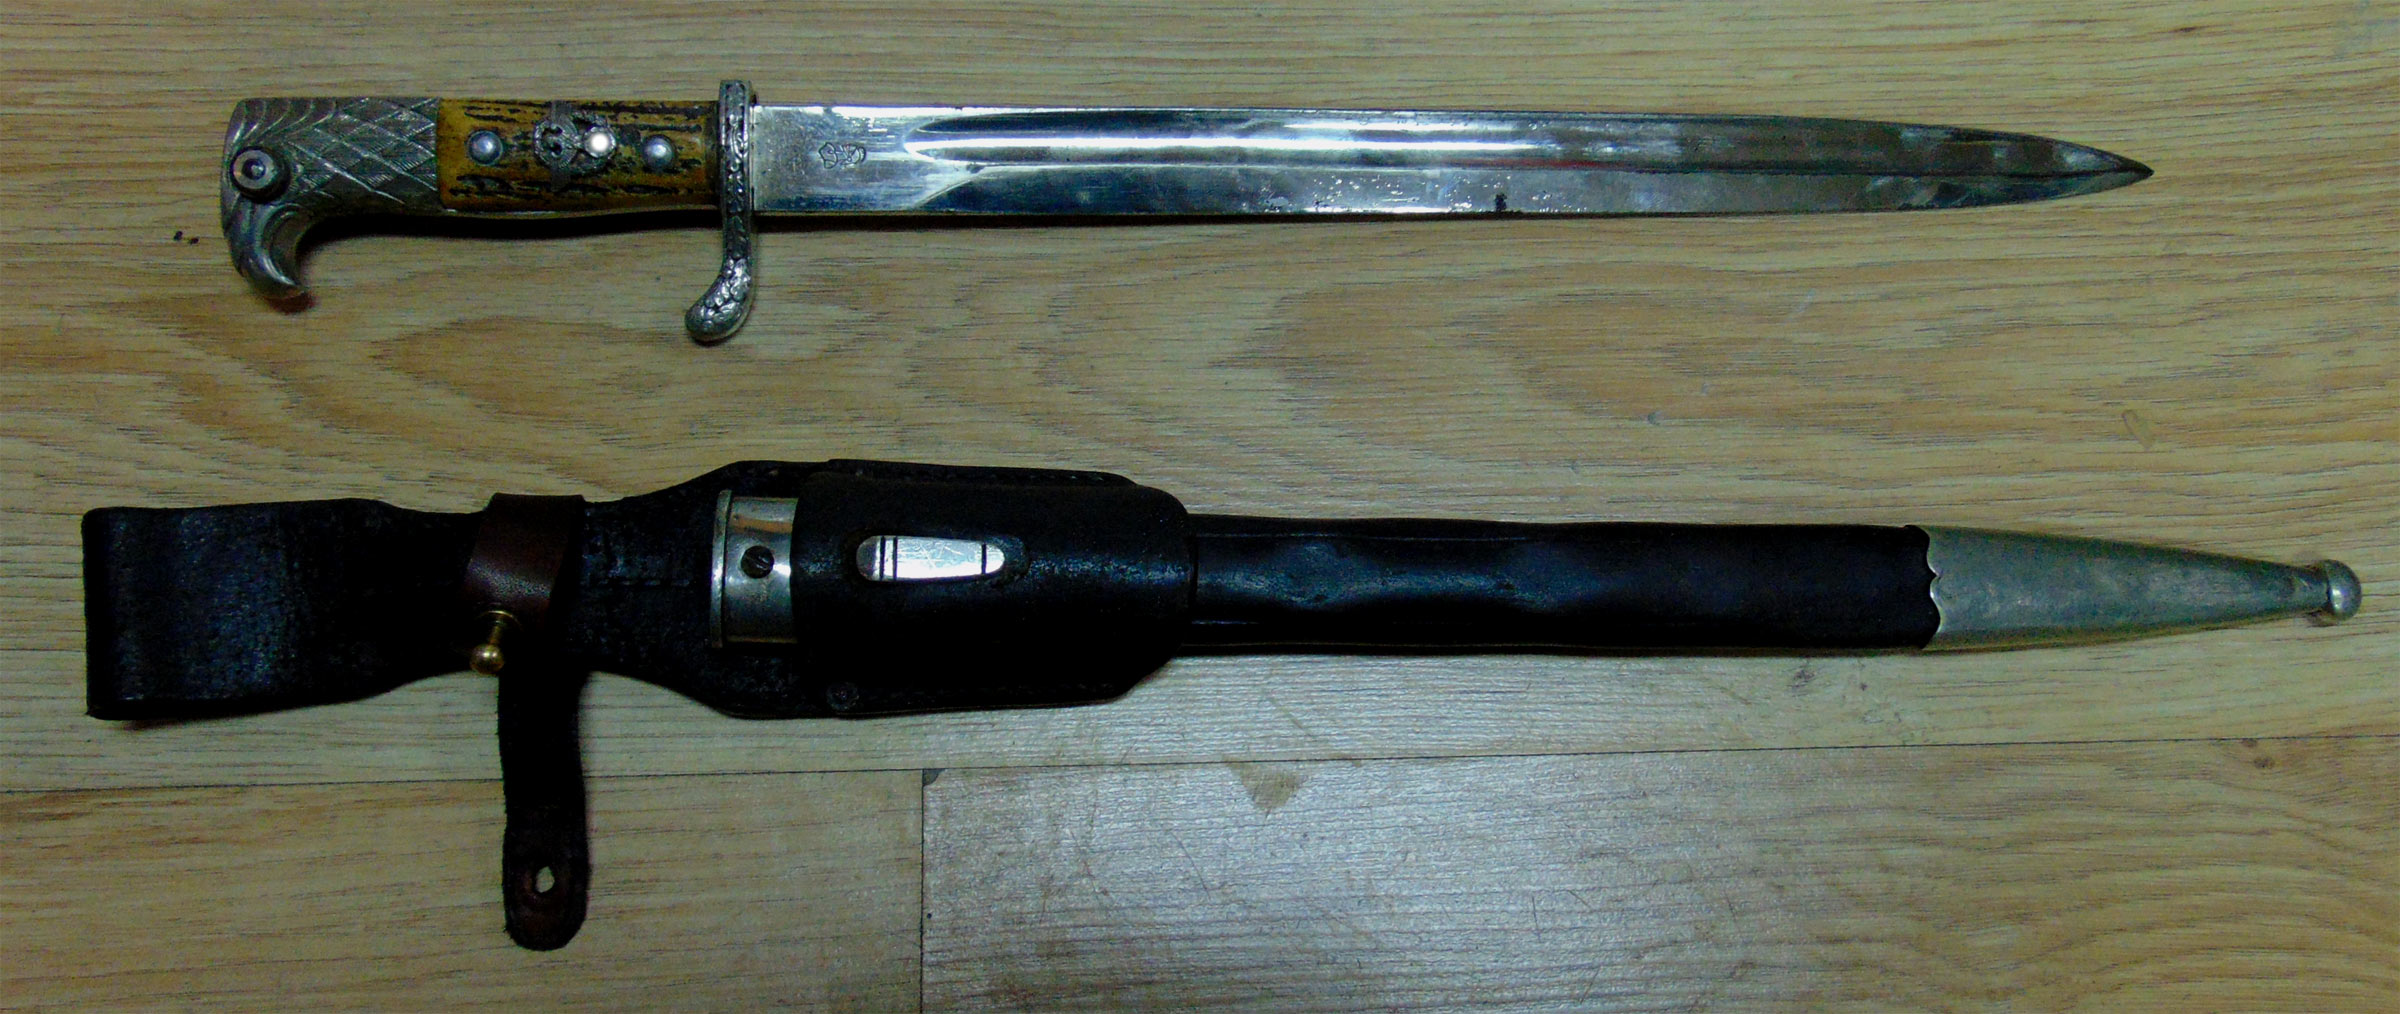 Немецкий полицейский нож образца 1938 года с подвеской